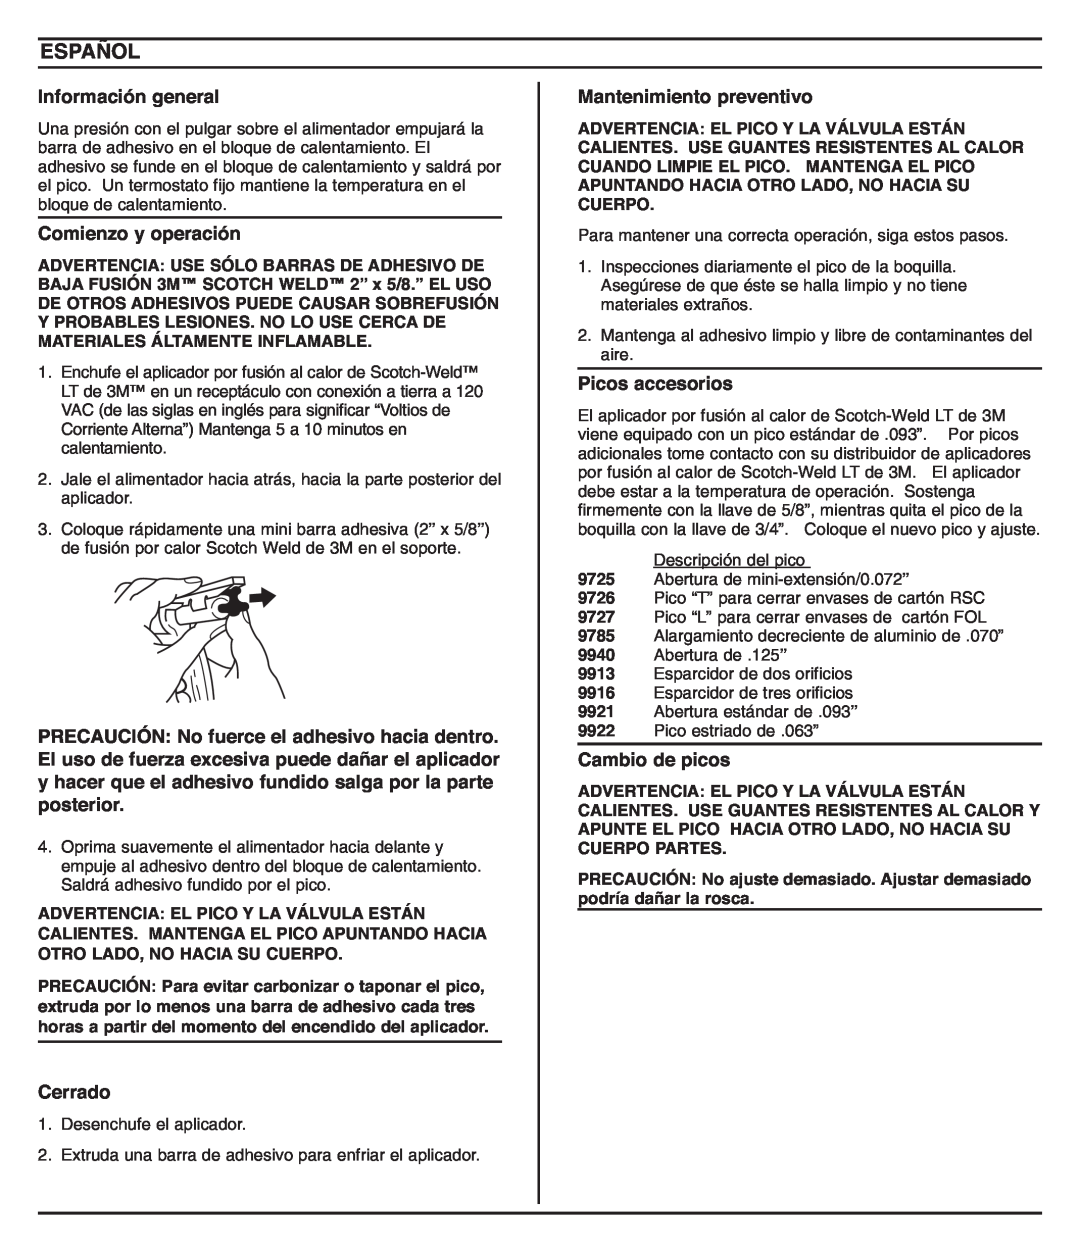 3M 9262 62-9262-9930-6 owner manual Español, Información general, Comienzo y operación, Cerrado, Mantenimiento preventivo 